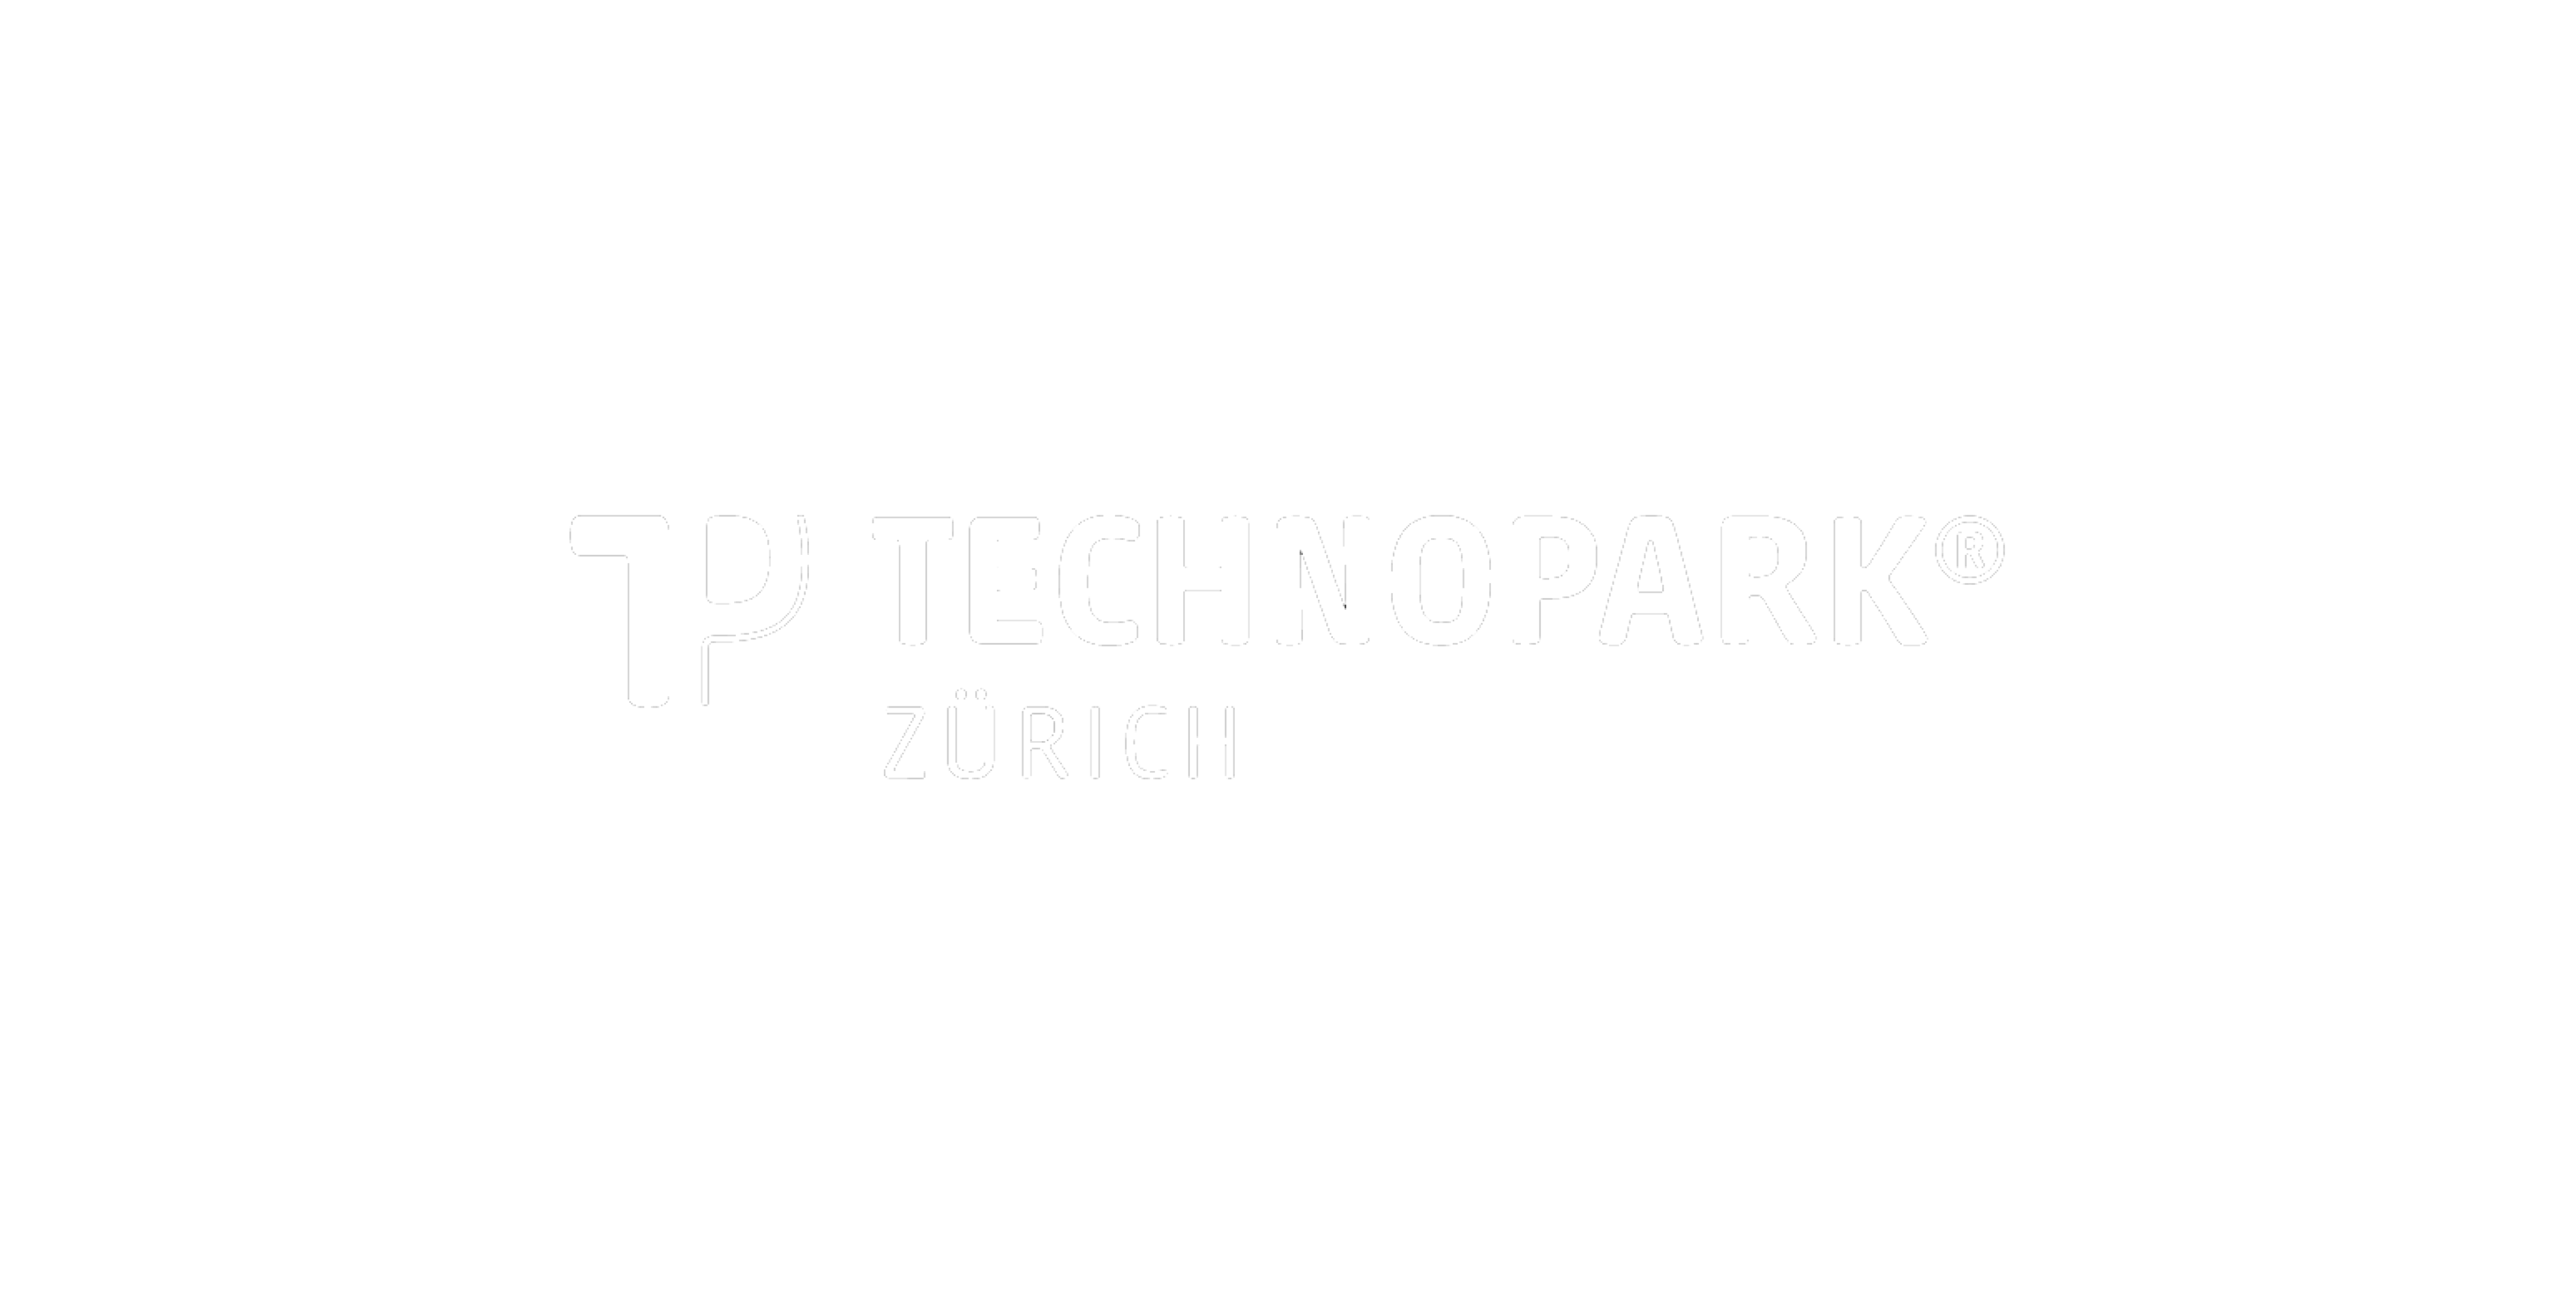 Technopark Zurich 